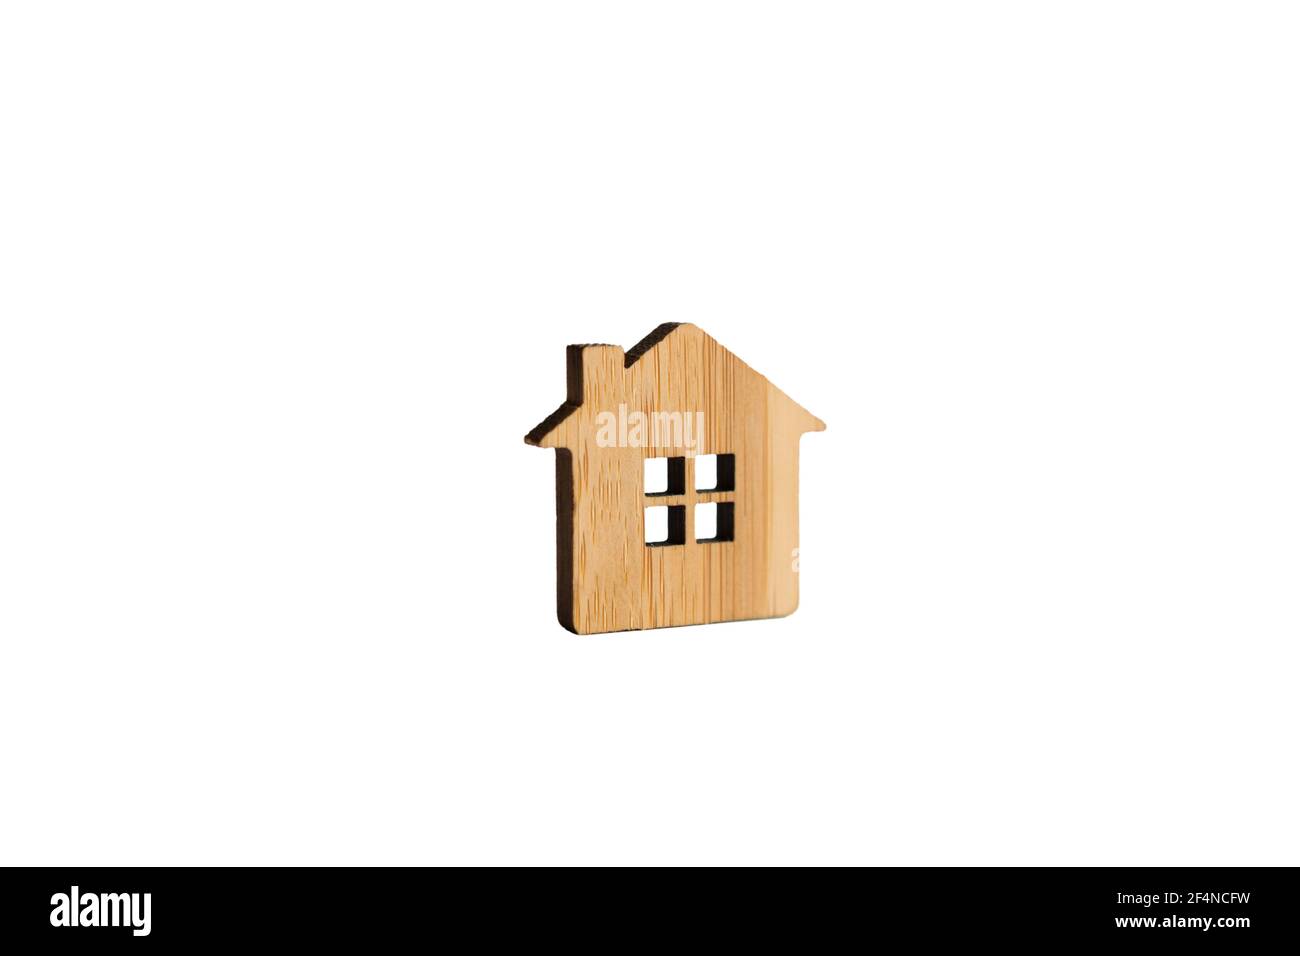 Maison en bois sur fond blanc isolée. Ferme, nouvelle maison, construction, relocalisation, achat immobilier, prêt hypothécaire, loyer. Porte-clés, poignée de commande, modèle Banque D'Images